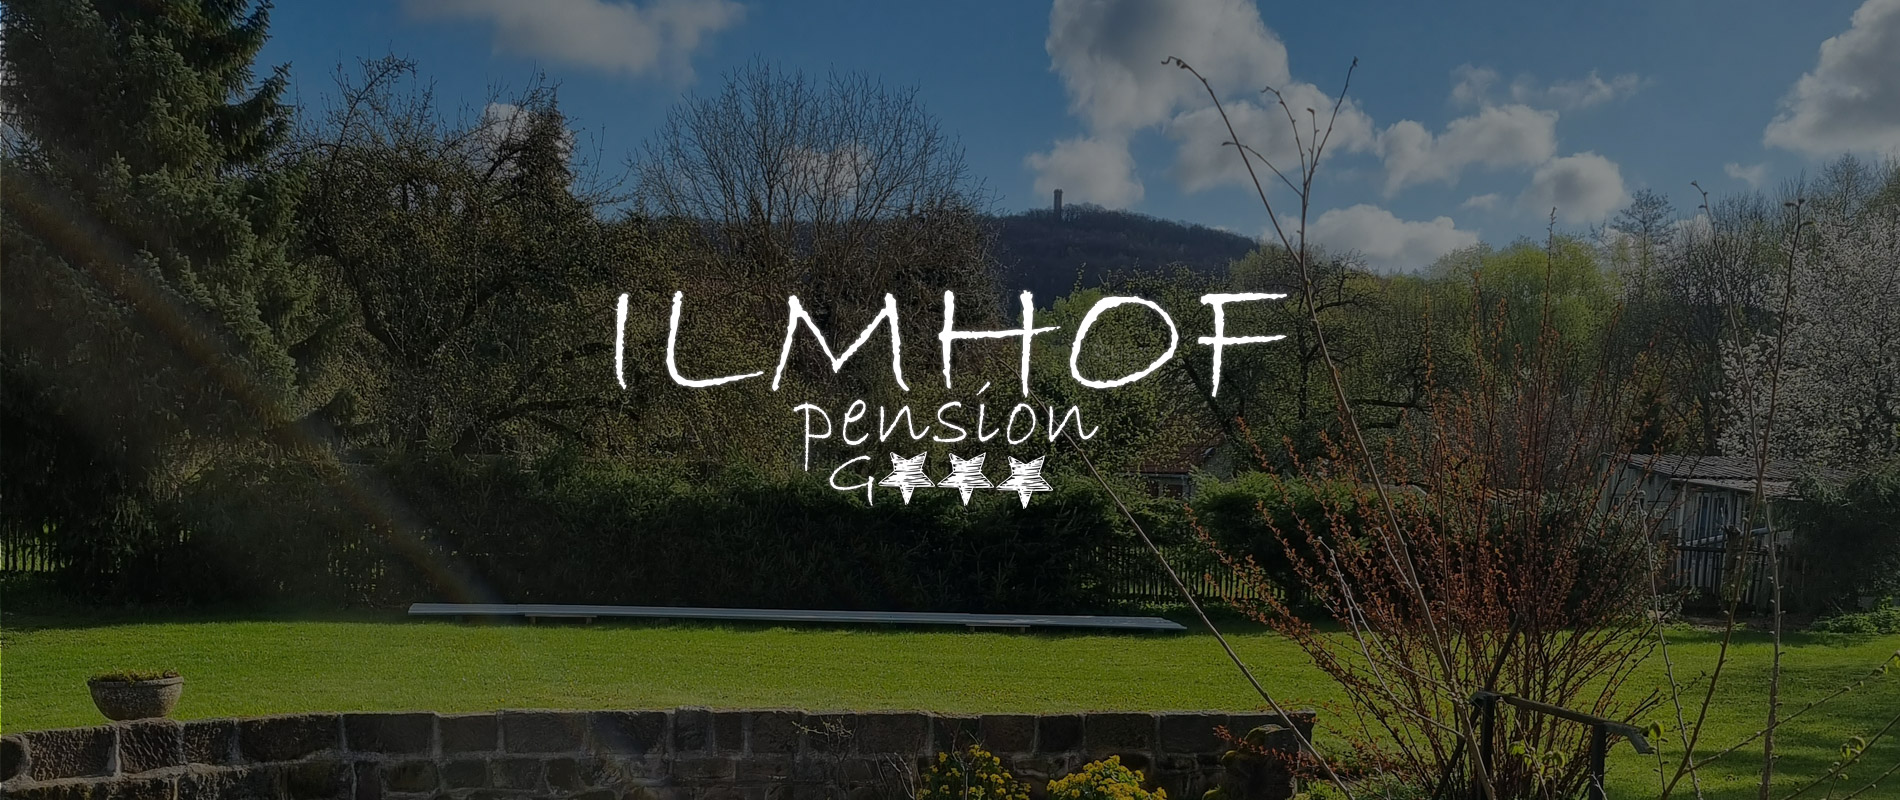 Pension Ilmhof in Bad Berka im Weimarer Land - www.ilmhof.de - urlaub in Weimarer Land in Thüringen